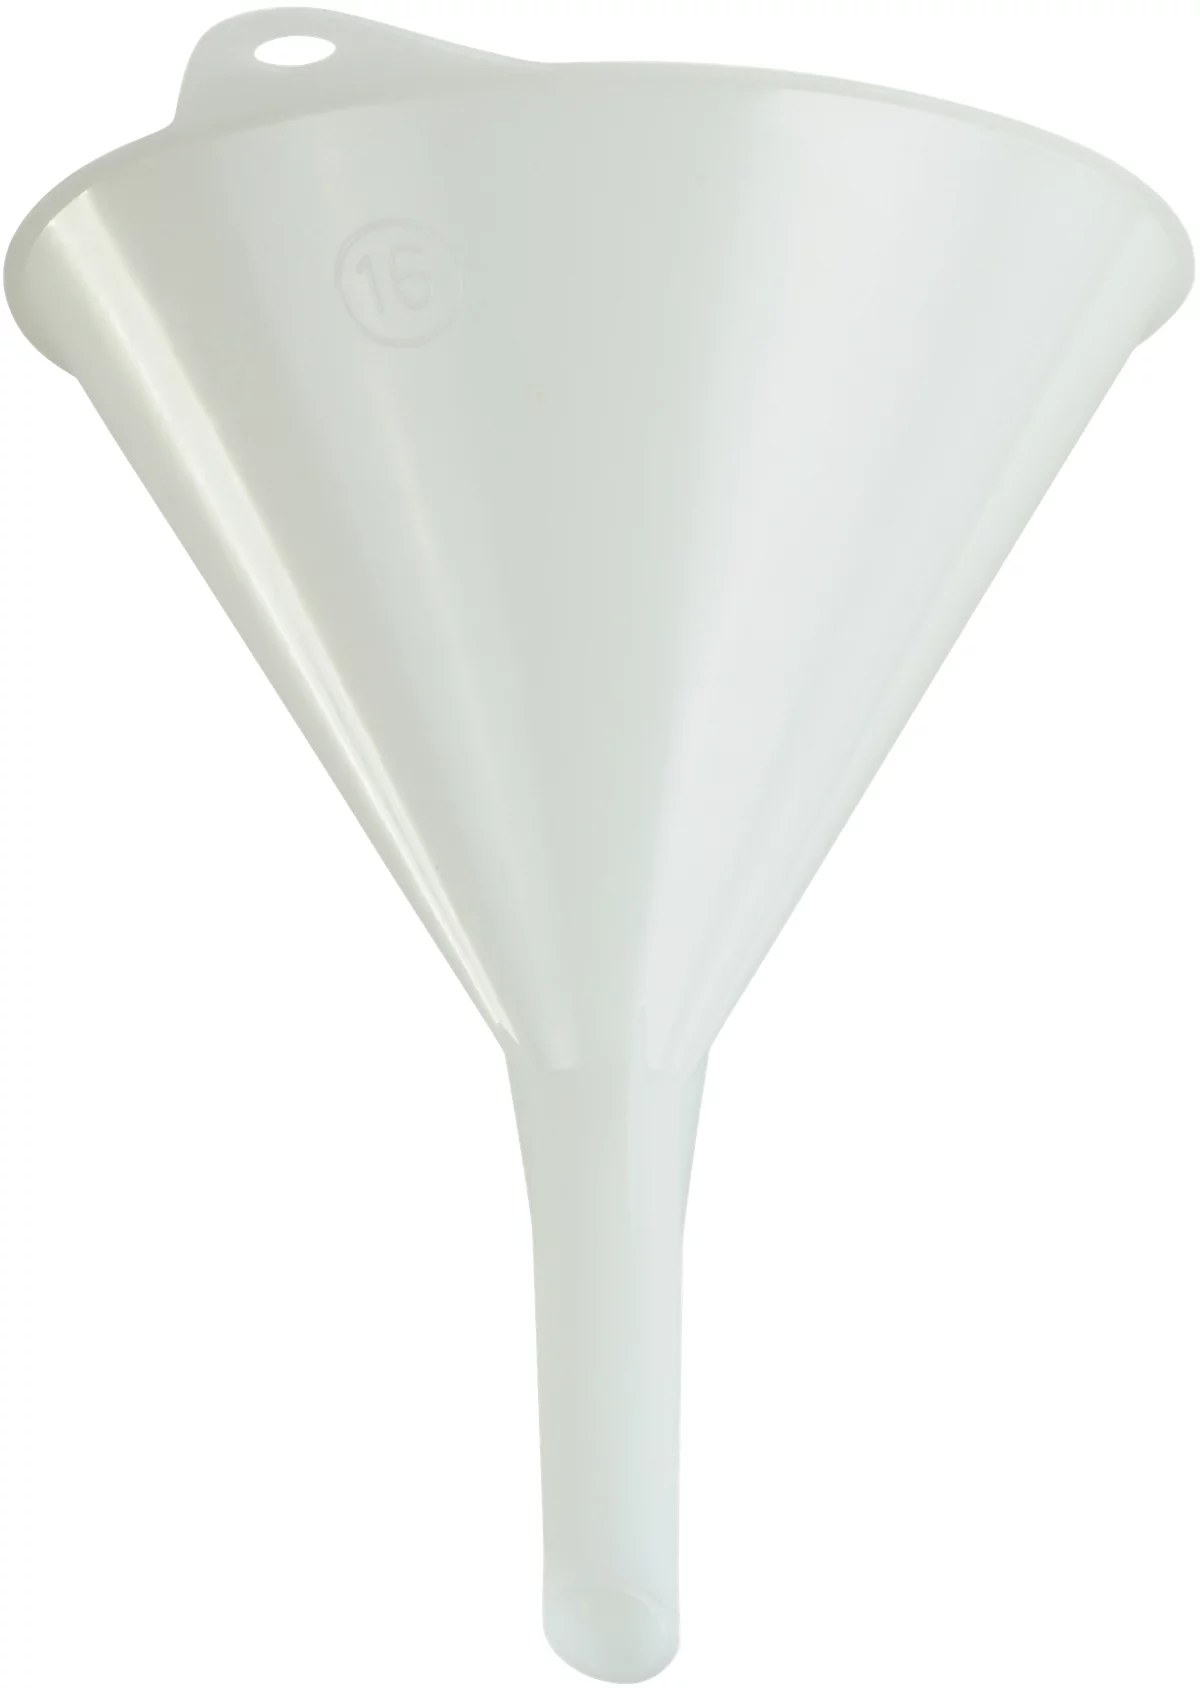 Embudo universal, ø 164 mm, polietileno (HDPE), de calidad alimentaria, con anilla y aletas de ventilación